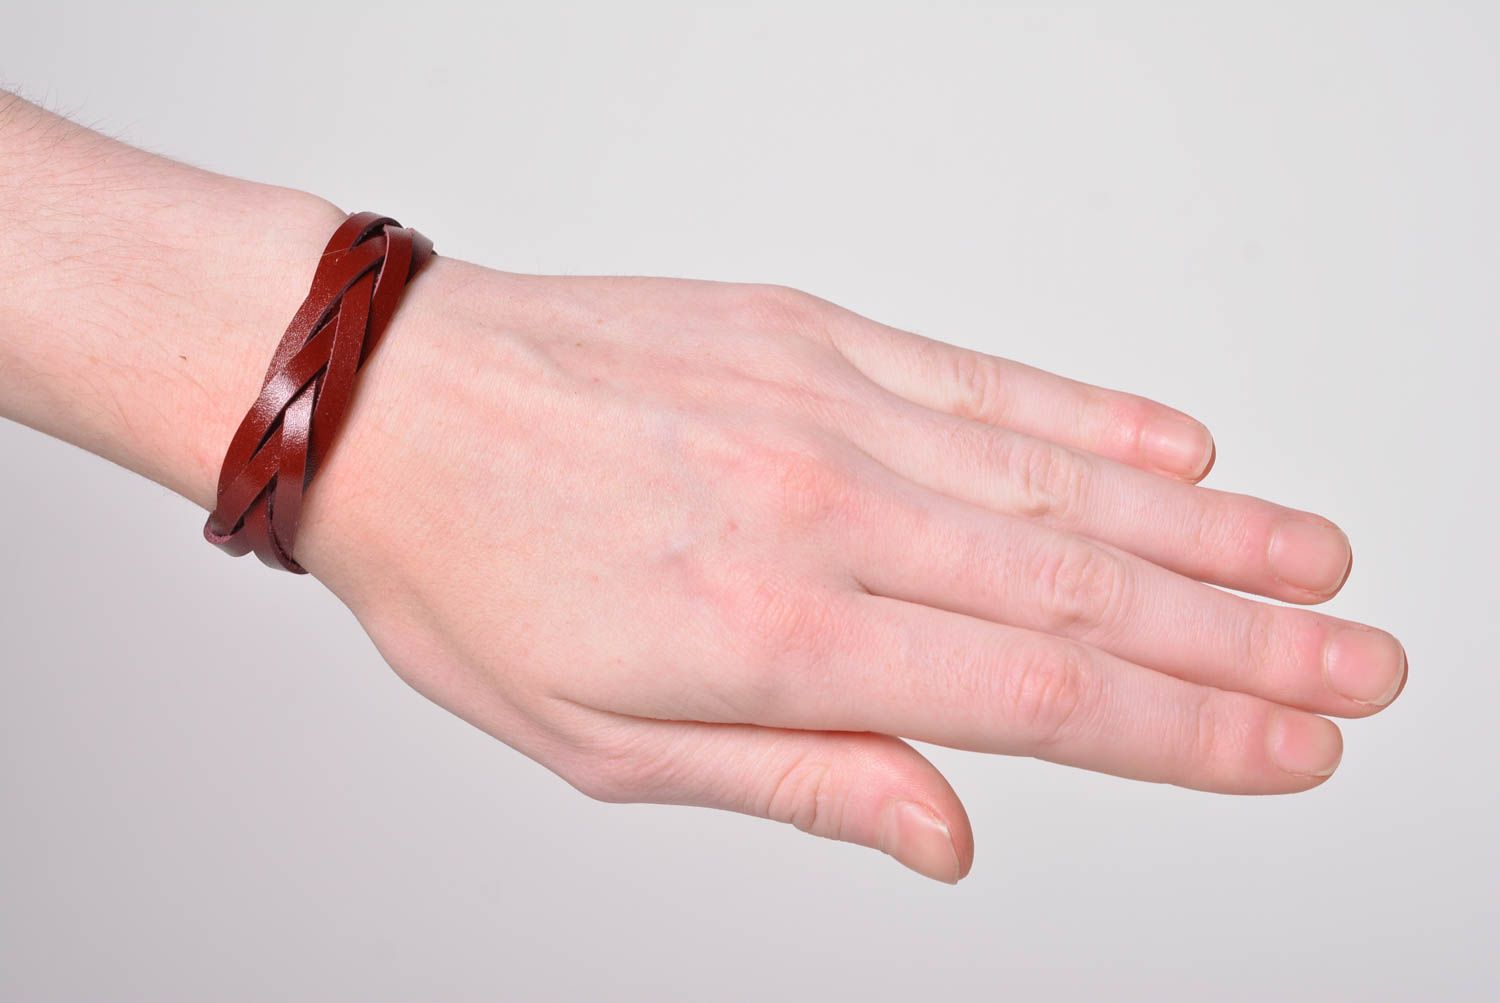 Stylish handmade leather bracelet wrist bracelet leather goods handmade gifts photo 2